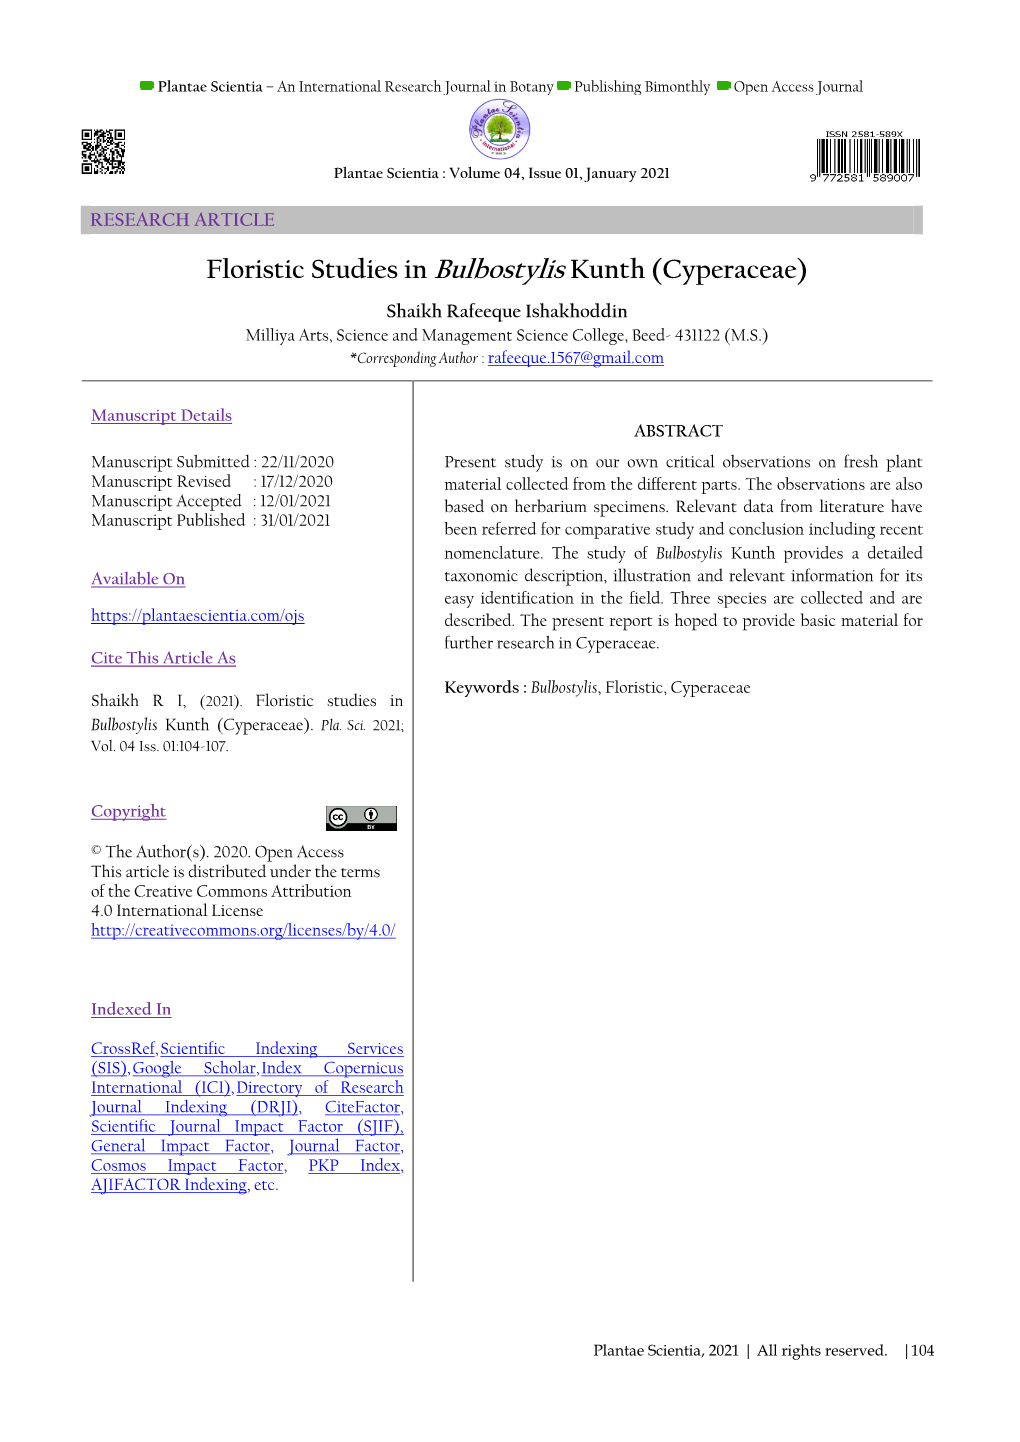 Floristic Studies in Bulbostylis Kunth (Cyperaceae)